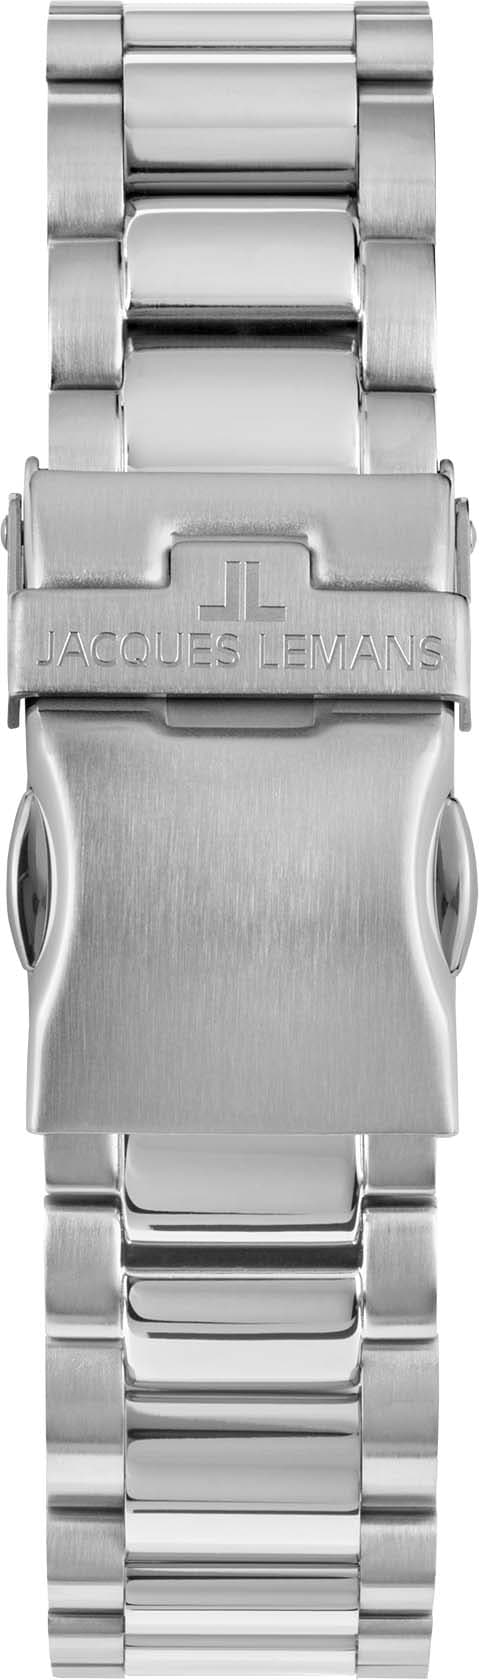 Jacques Lemans Chronograph »Liverpool, 1-2140F«